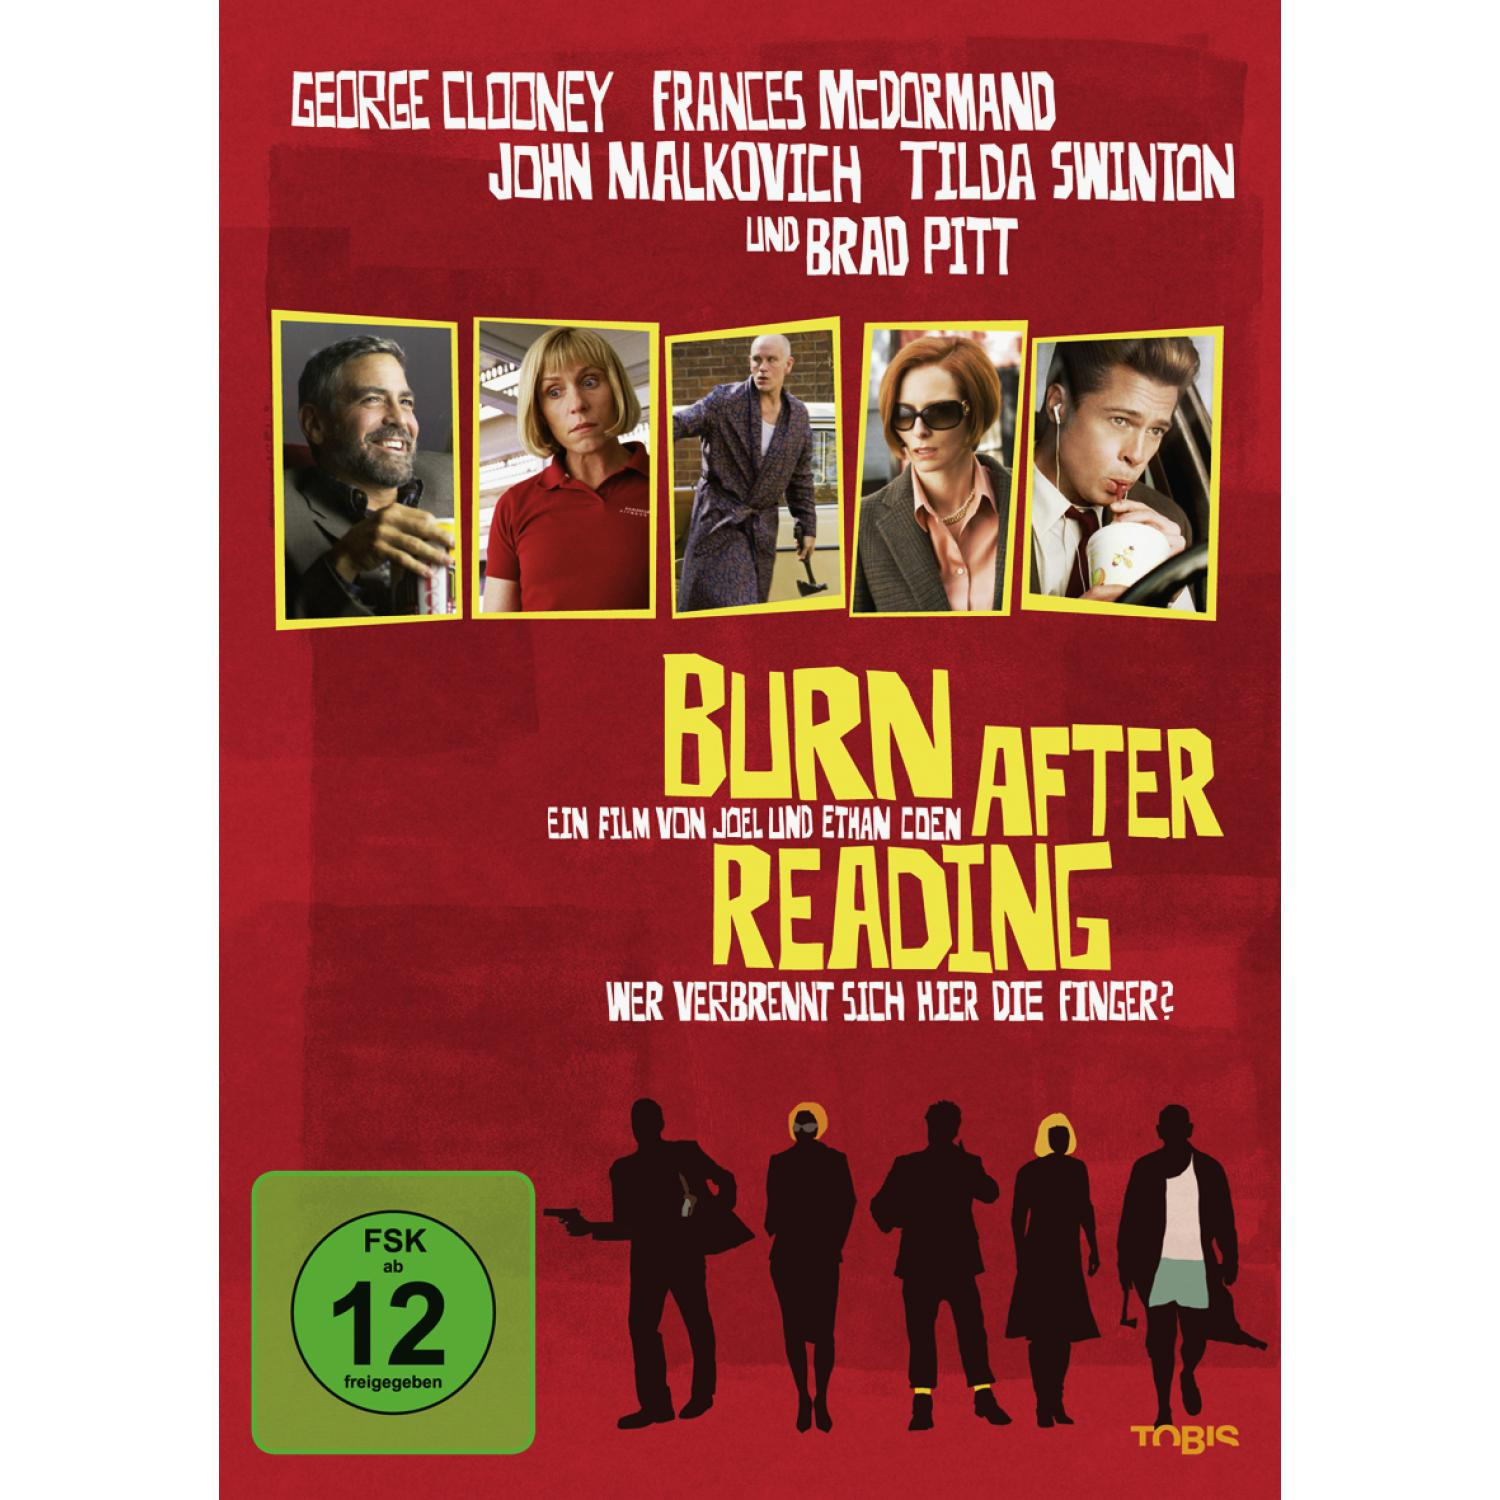 DVD Wer Reading hier sich verbrennt Finger? die After - Burn